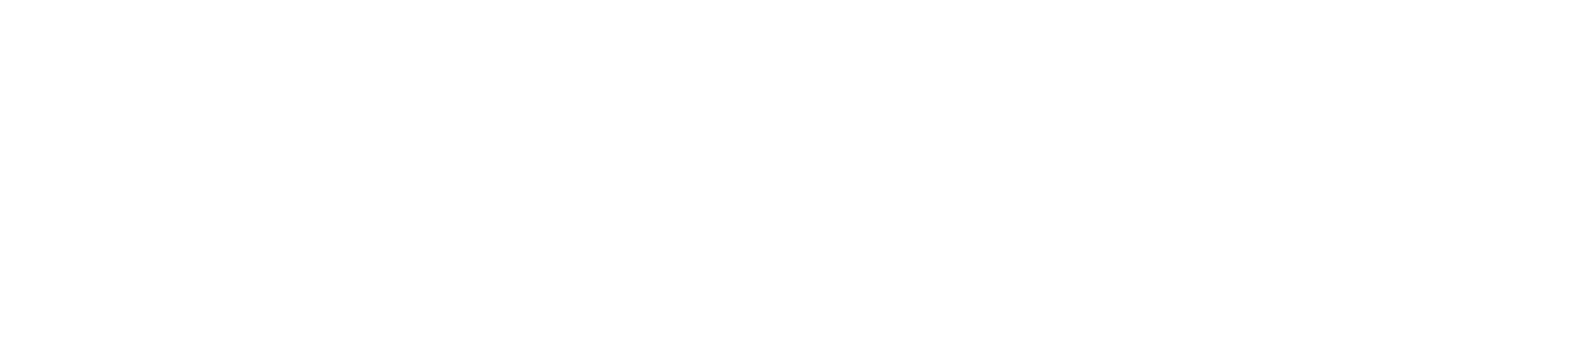 Bunge logo large for dark backgrounds (transparent PNG)